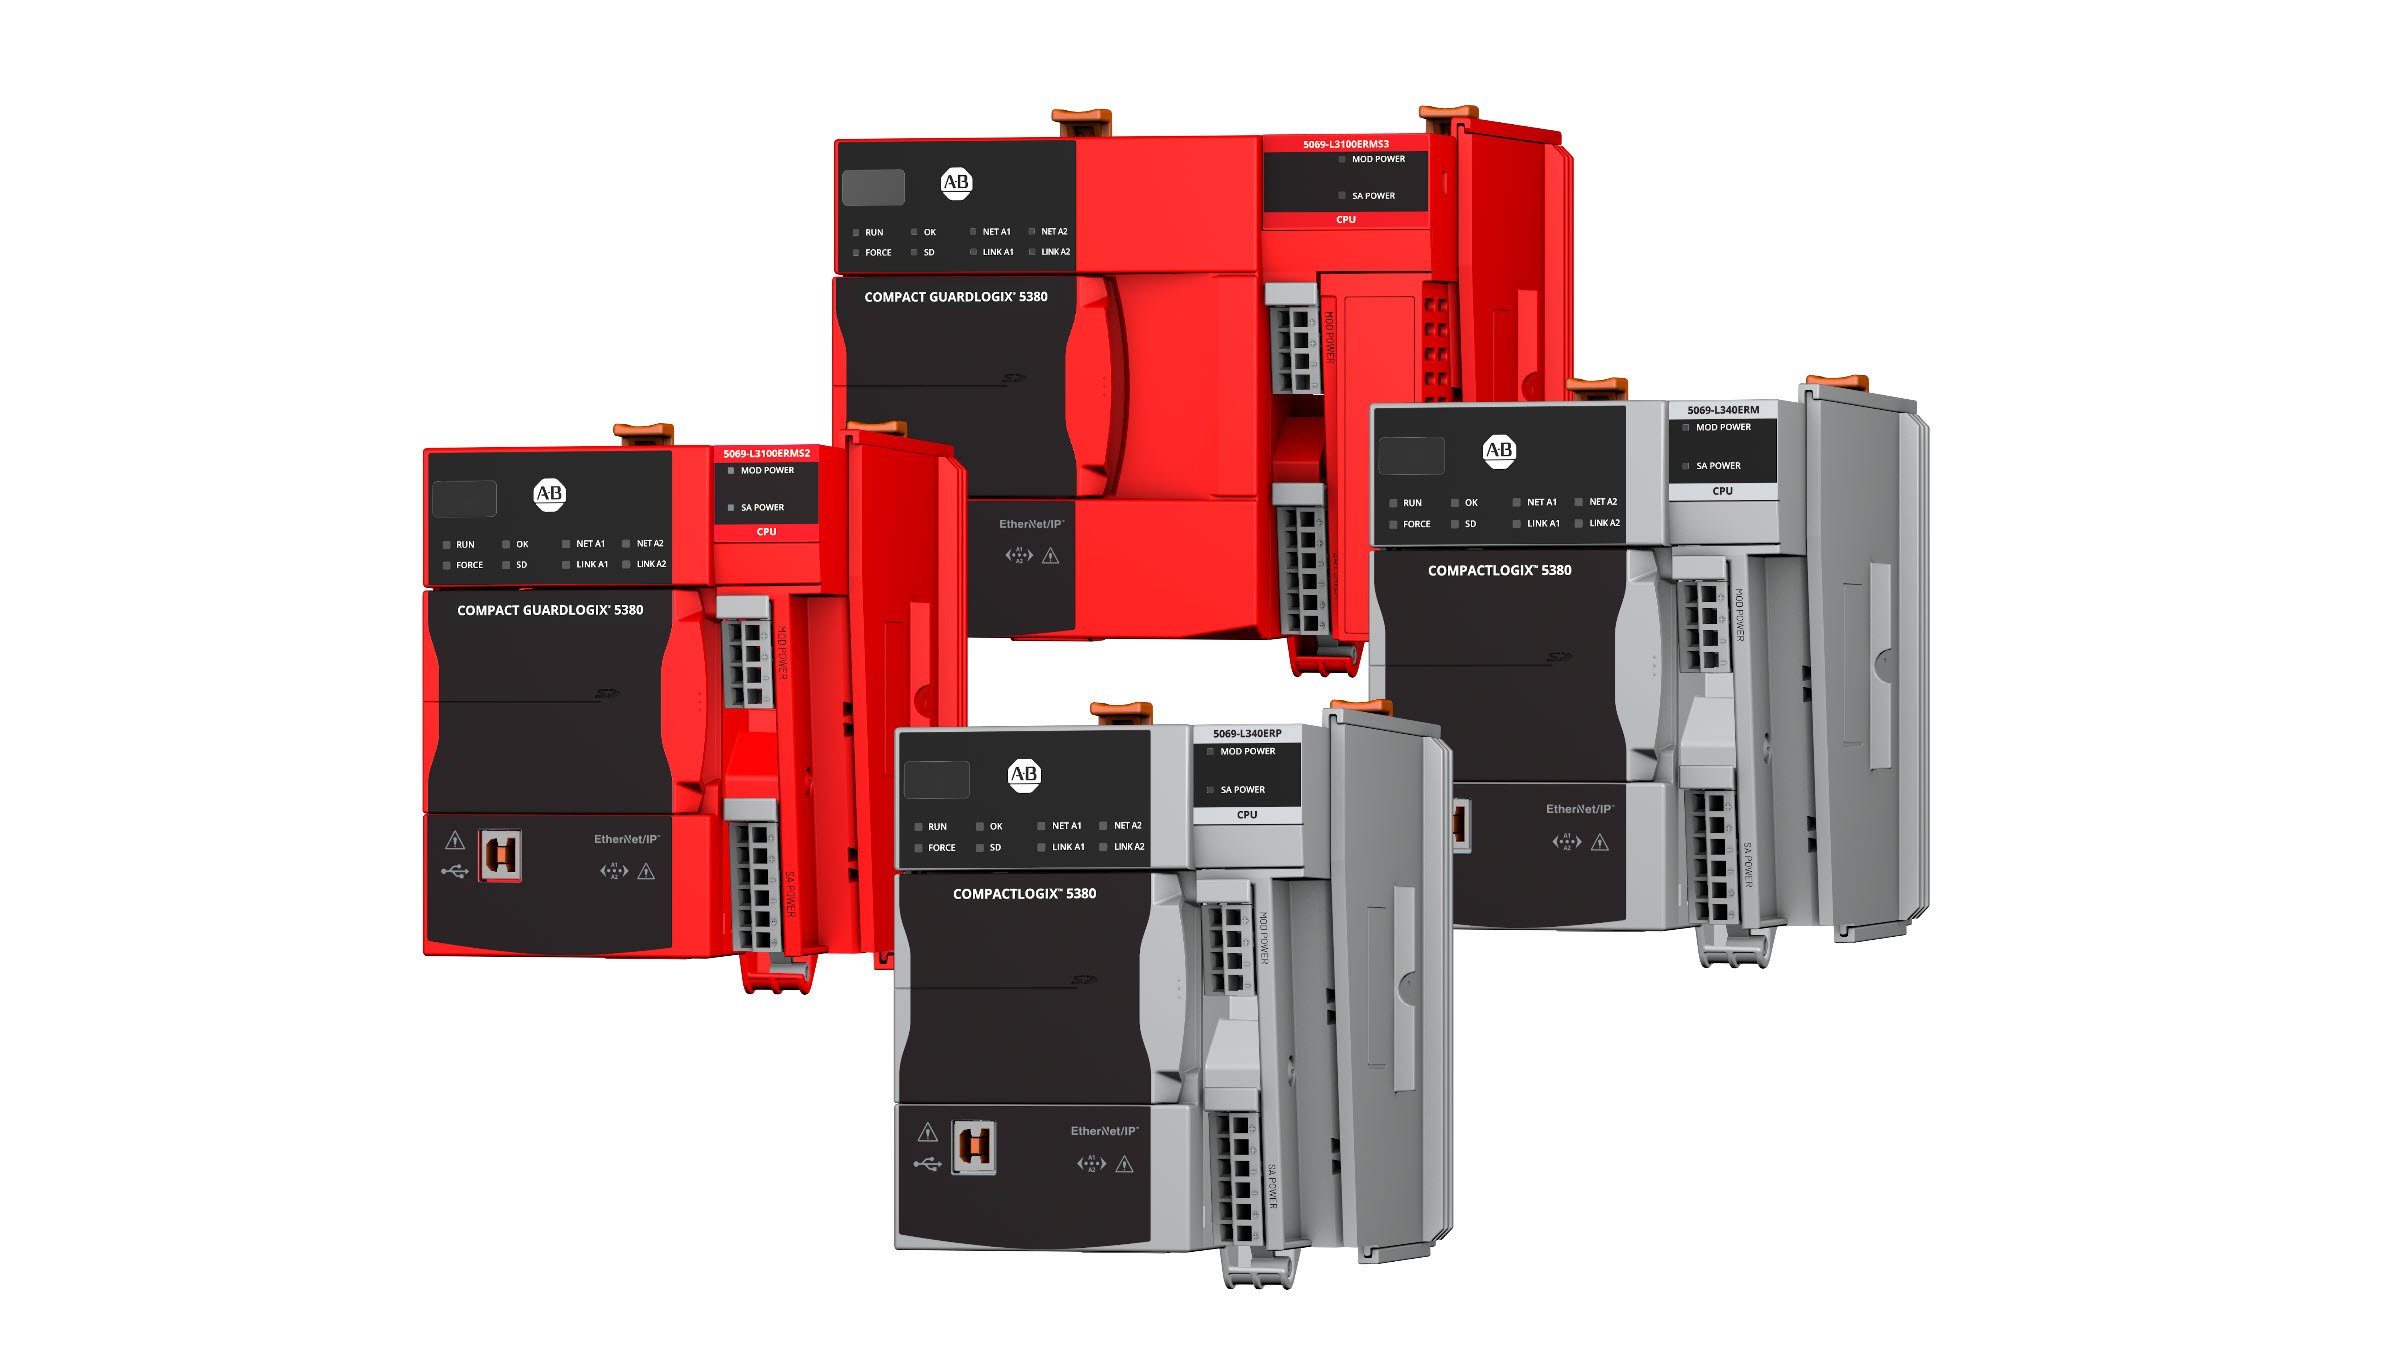 Eine Collage mit Compact-GuardLogix-5380- und CompactLogix-5380-Steuerungen. Bestellnummern 5069-L3100ERMS3, 5069-L3100ERMS2, 5069-L340ERM und 5069-L340ERP.